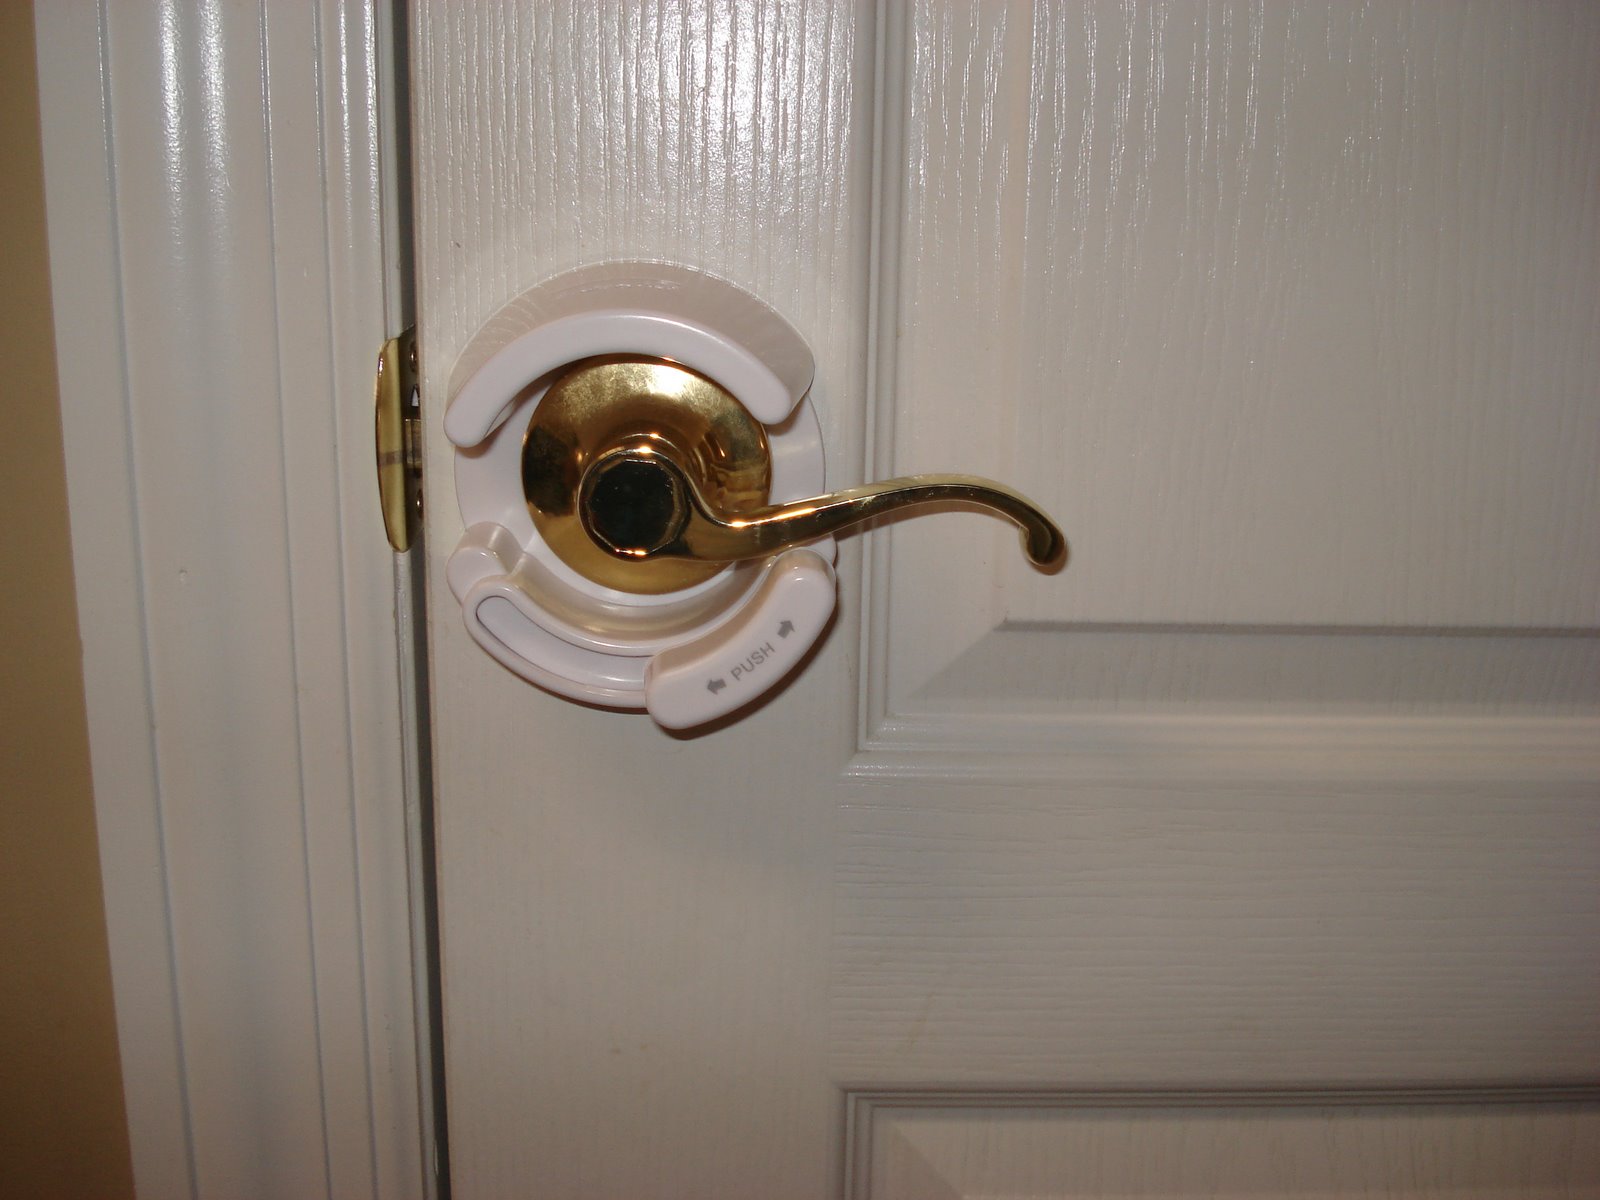 childproof door knobs photo - 2